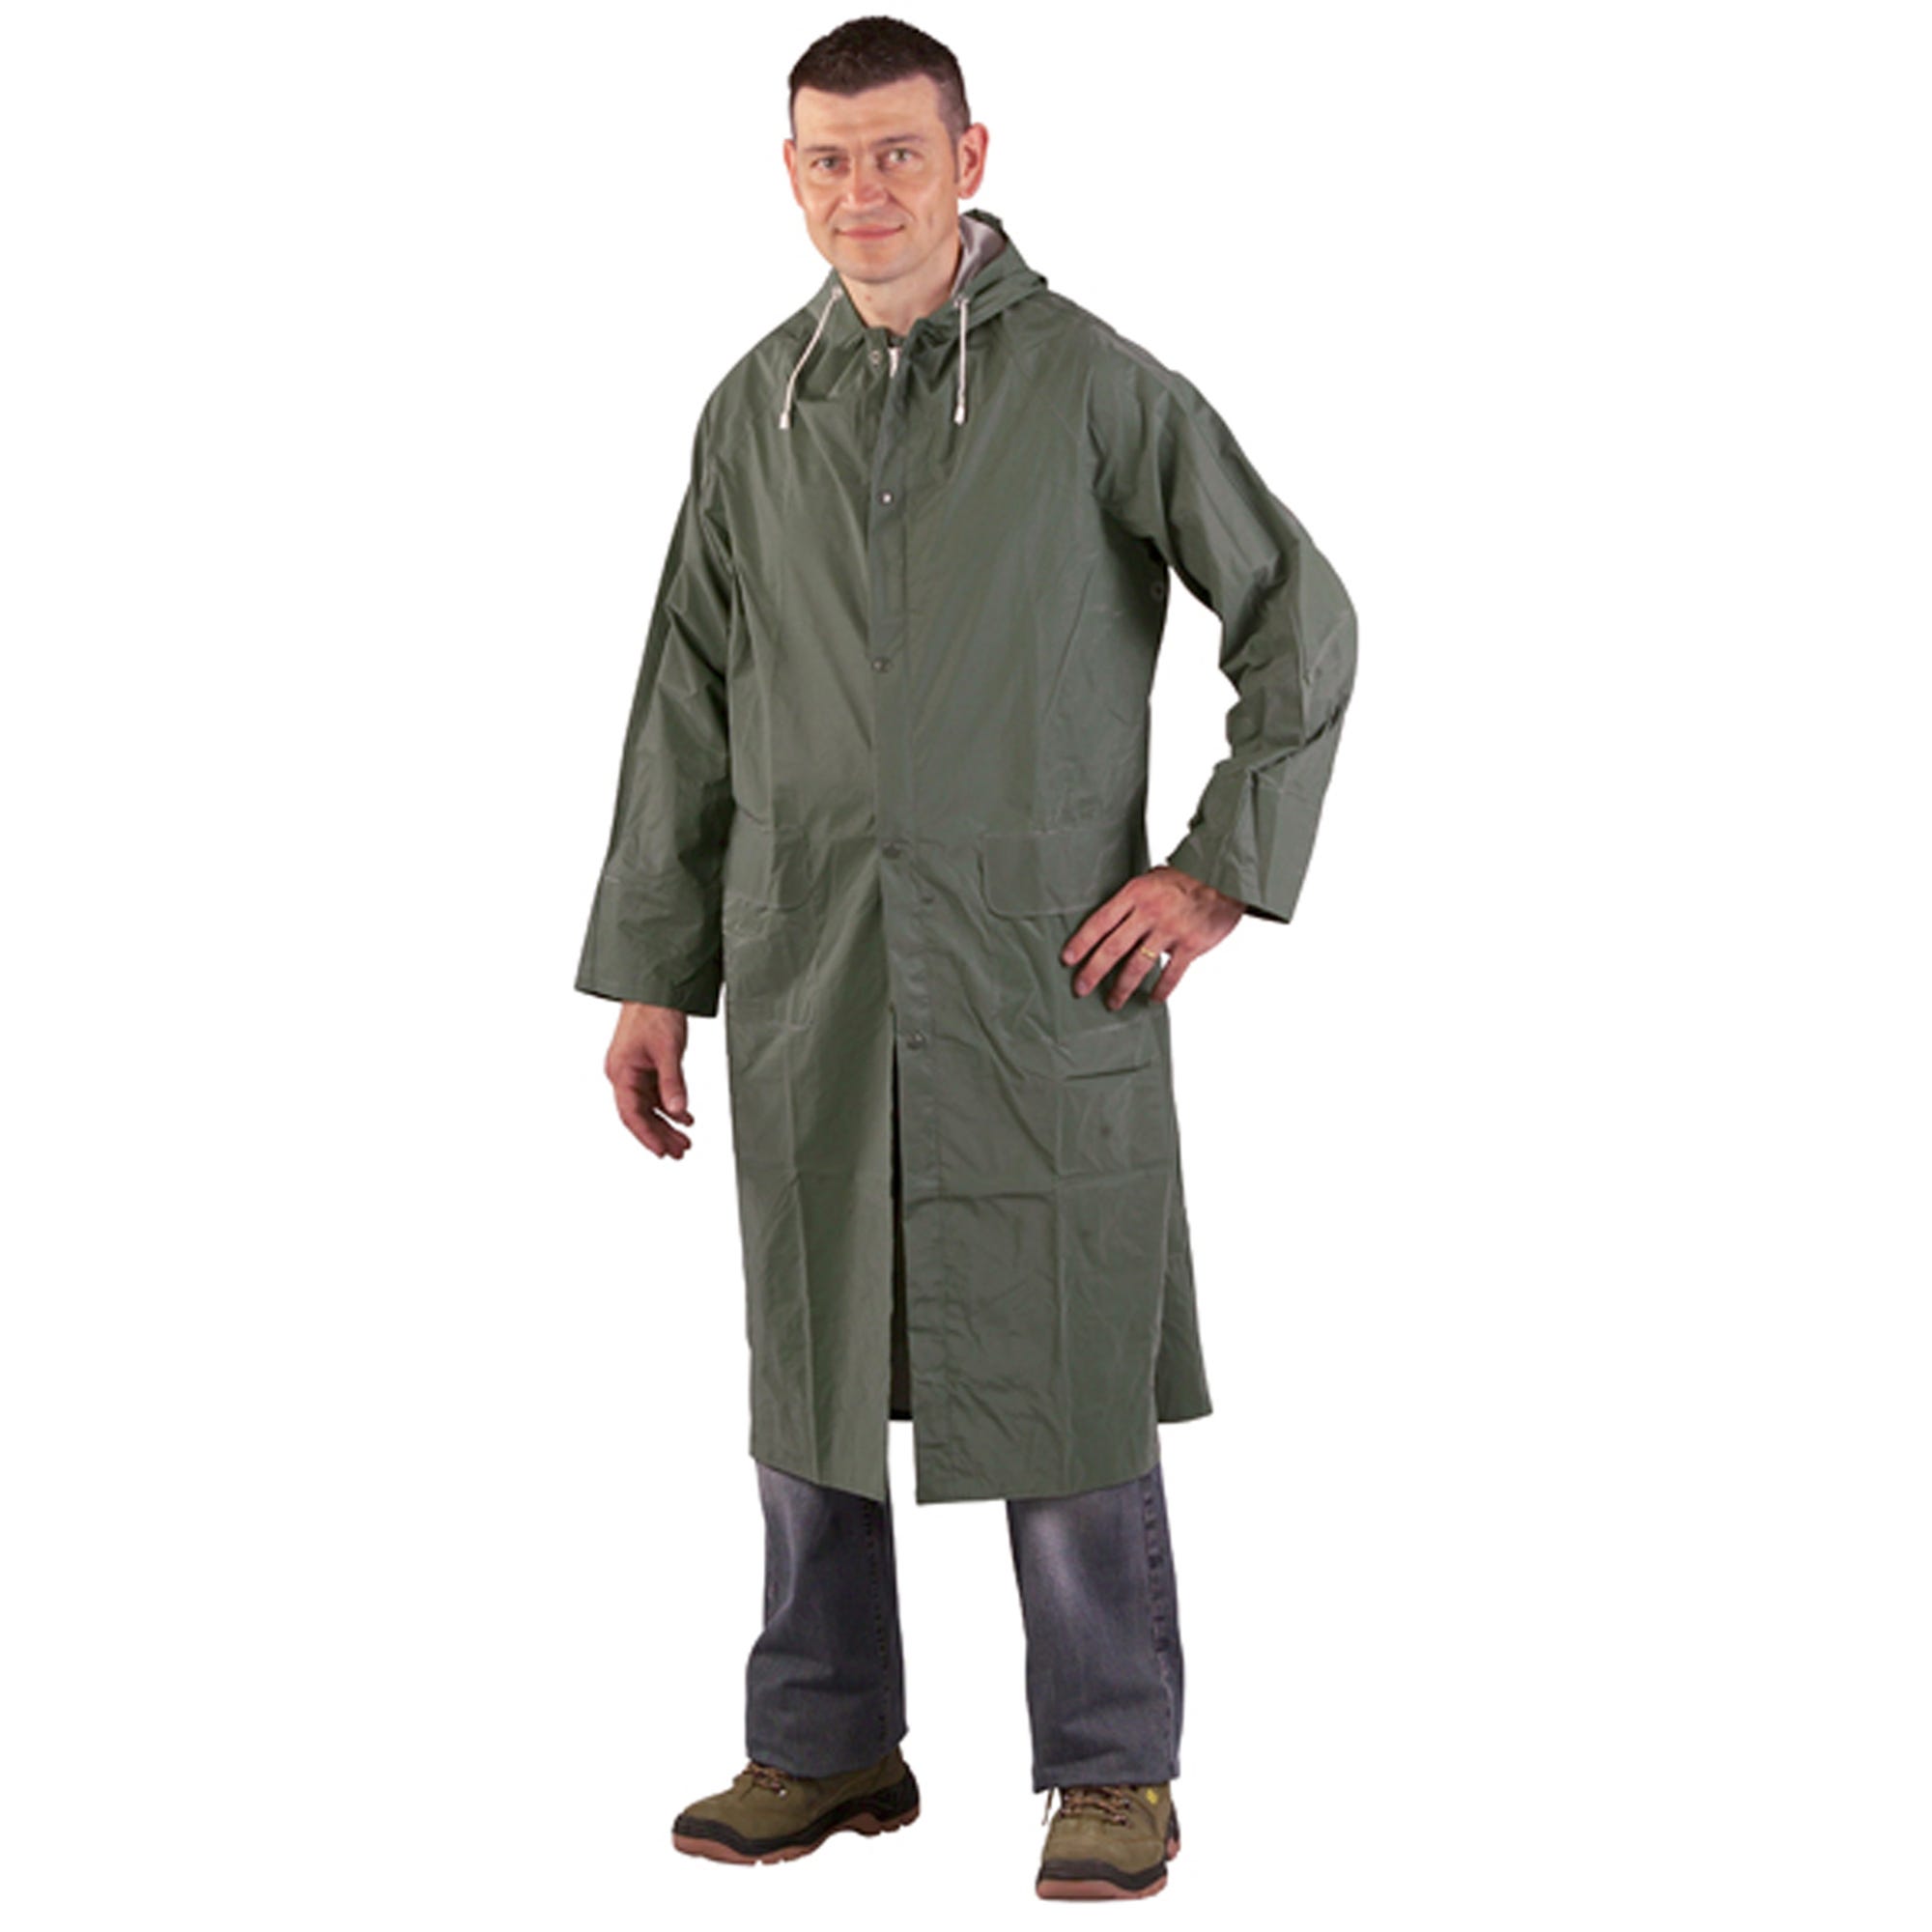 Manteau de pluie CO/PES, vert, 415g/m² - COVERGUARD - Taille M 1